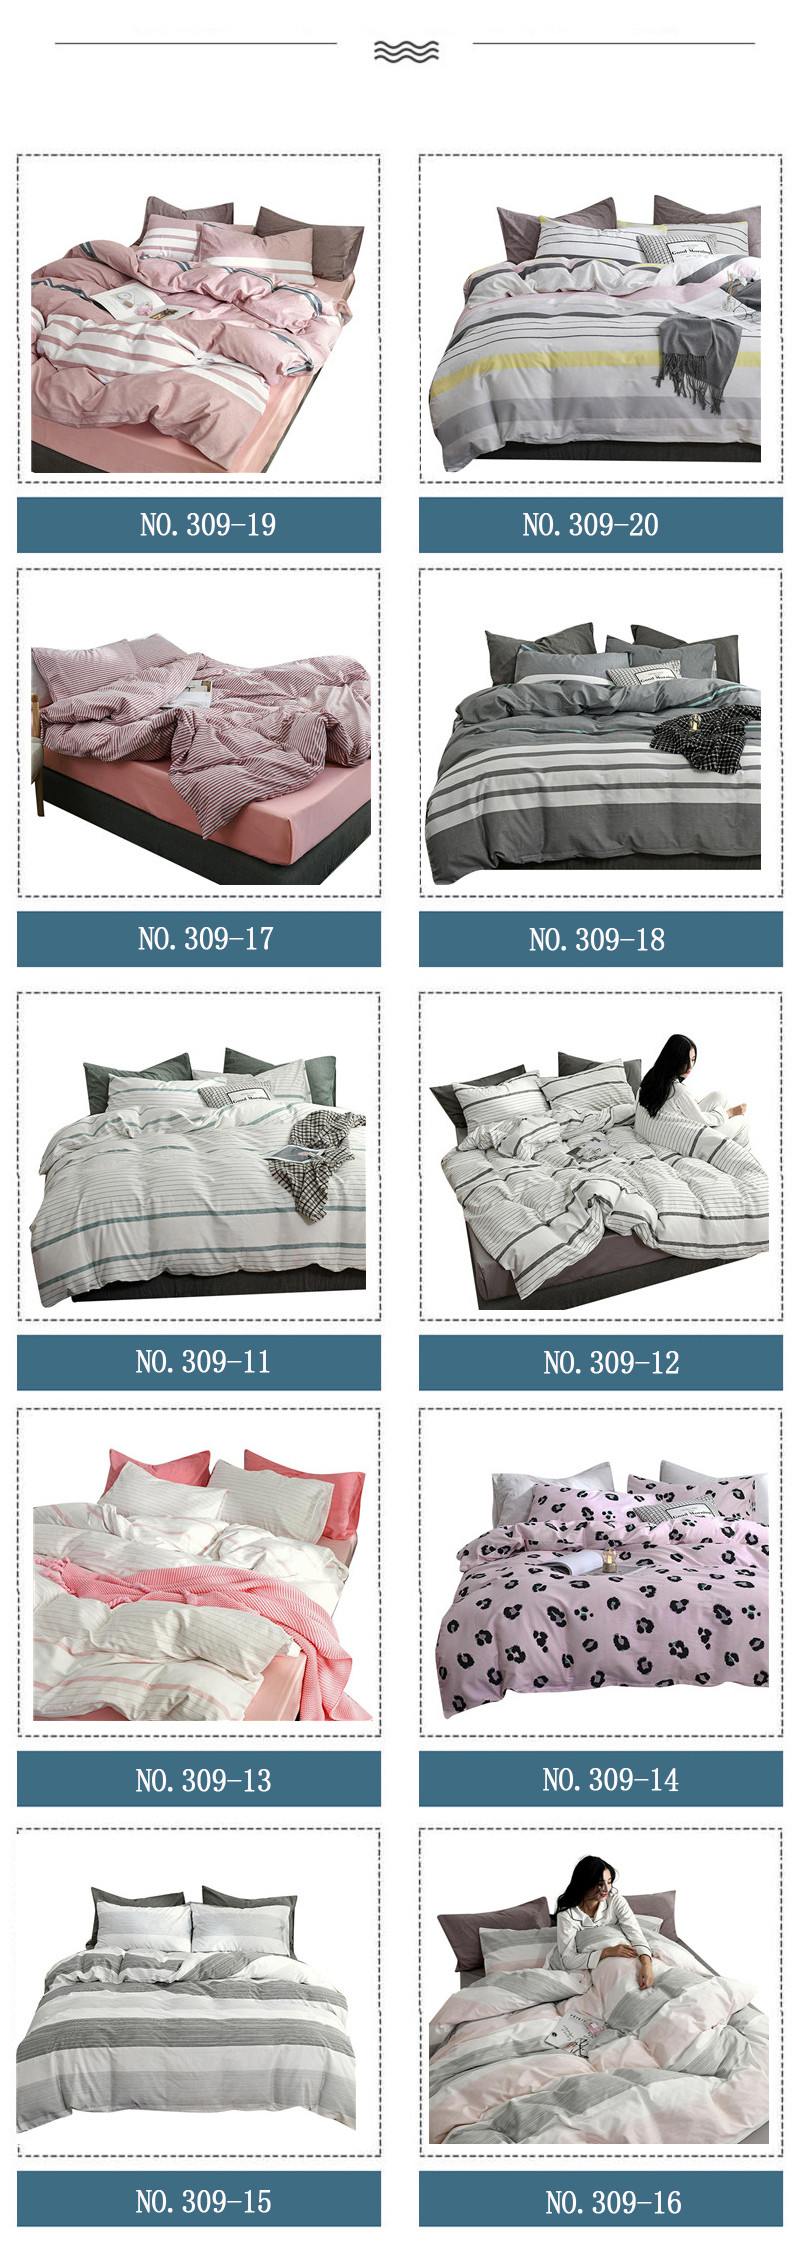 Bed Sheet Hot Selling Modern Design